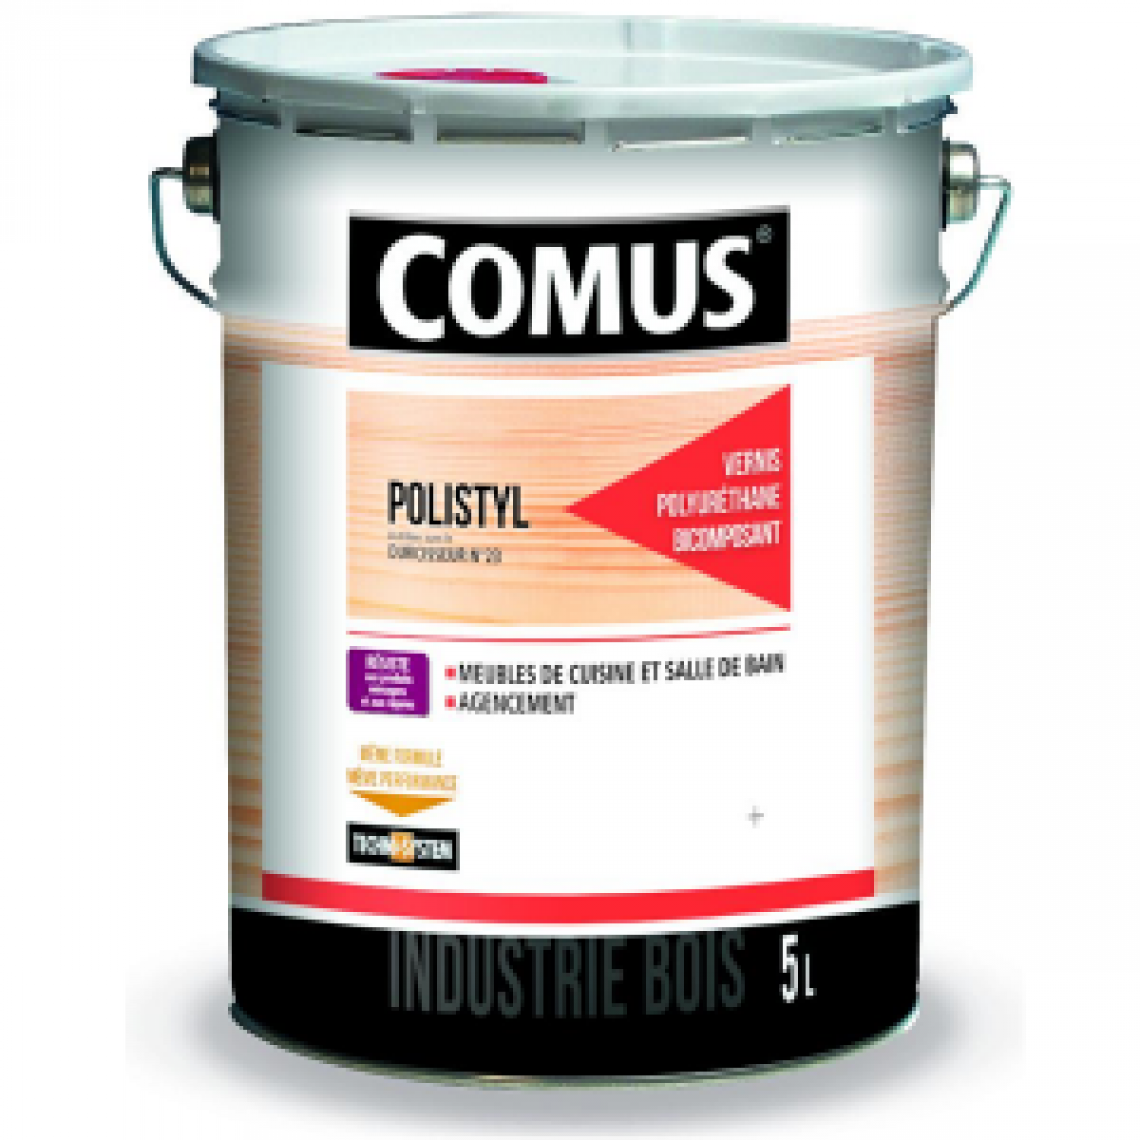 Comus - Vernis finition bi-couche polyuréthane mat 10 Polystyl 2065 COMUS - 5 L - 7779 - Matériel de pose, produits d'entretien